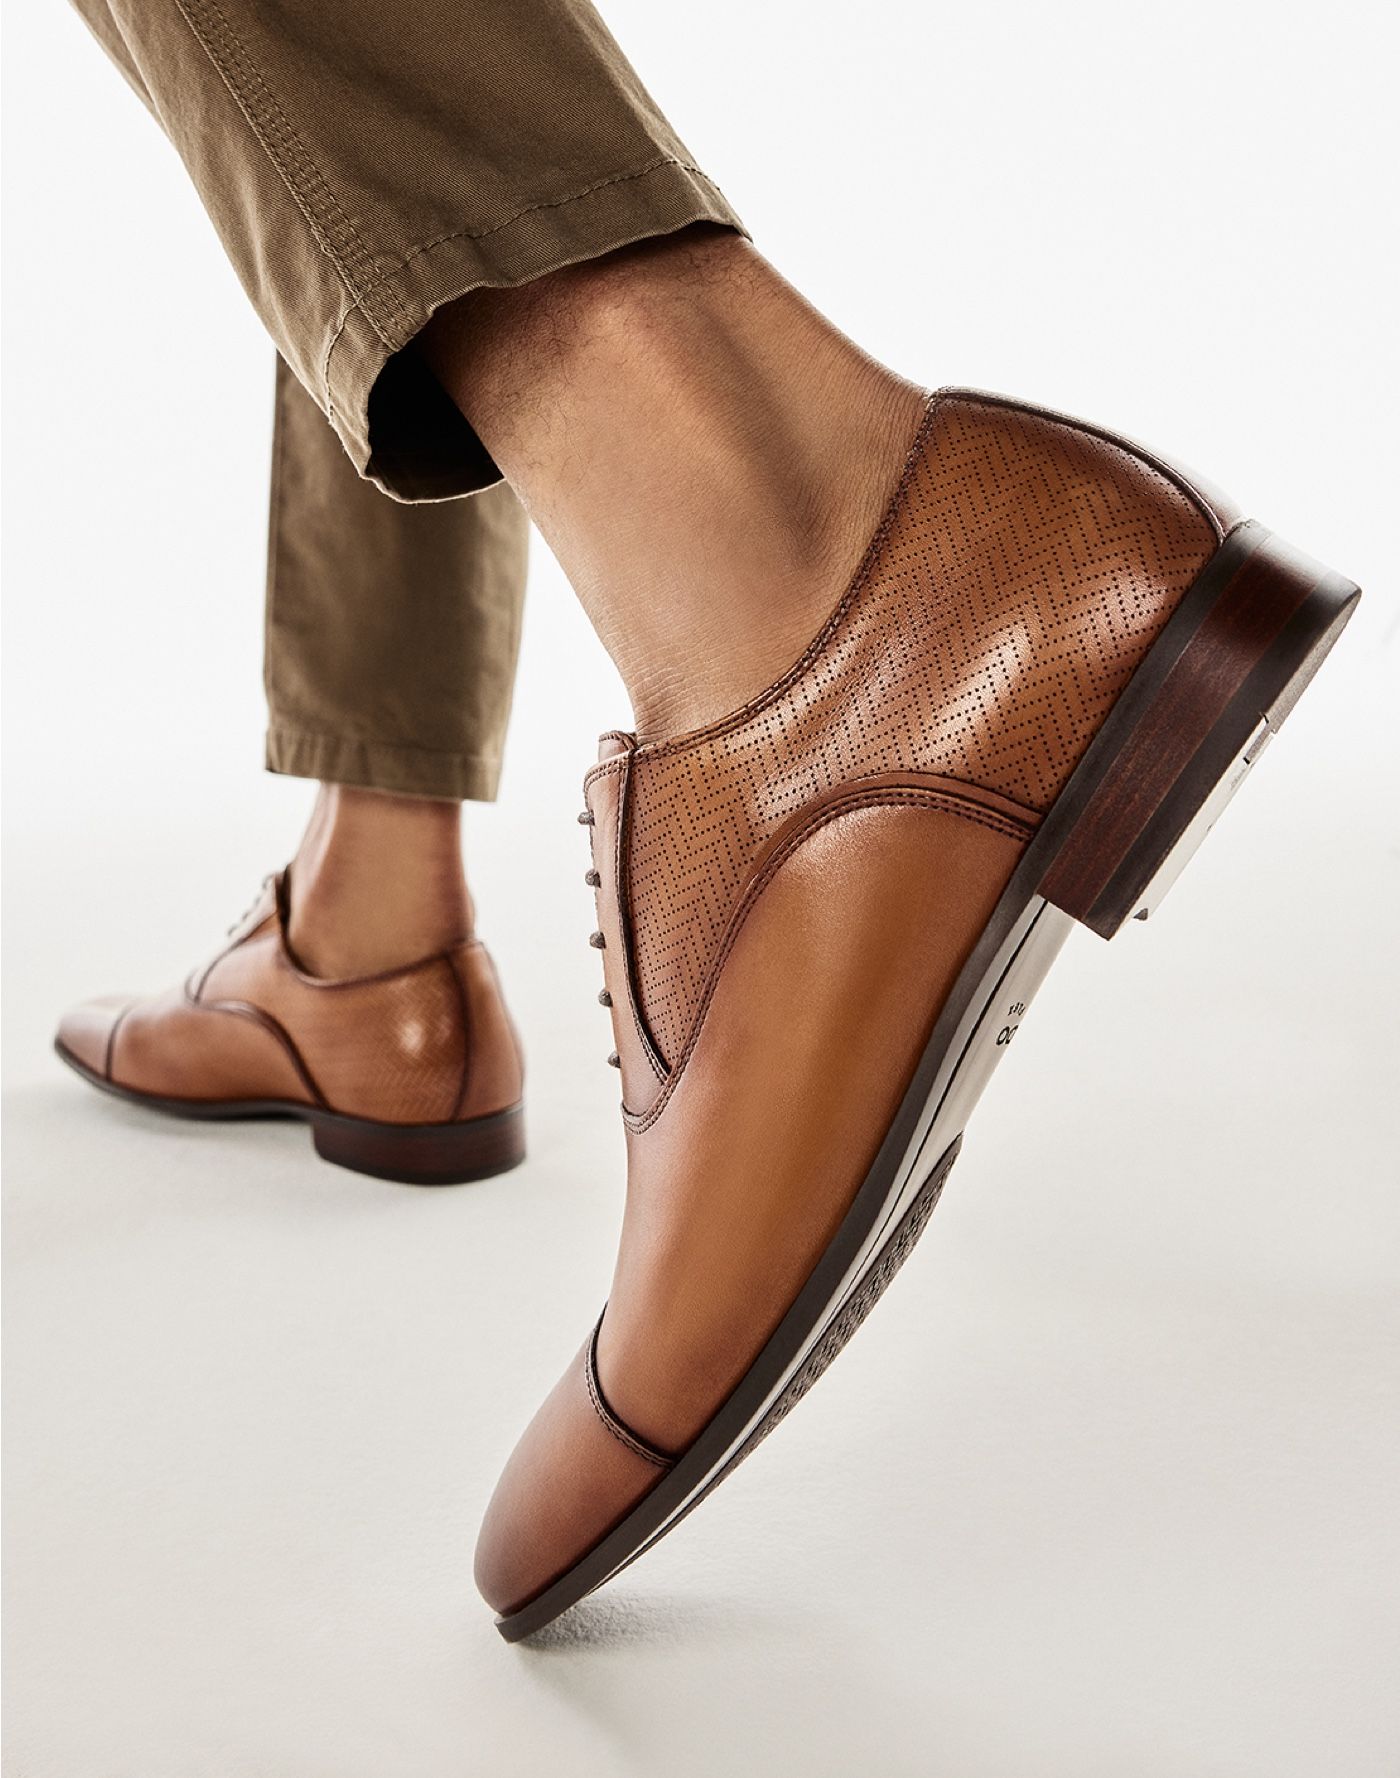 Shoes for Men | All Men's shoes